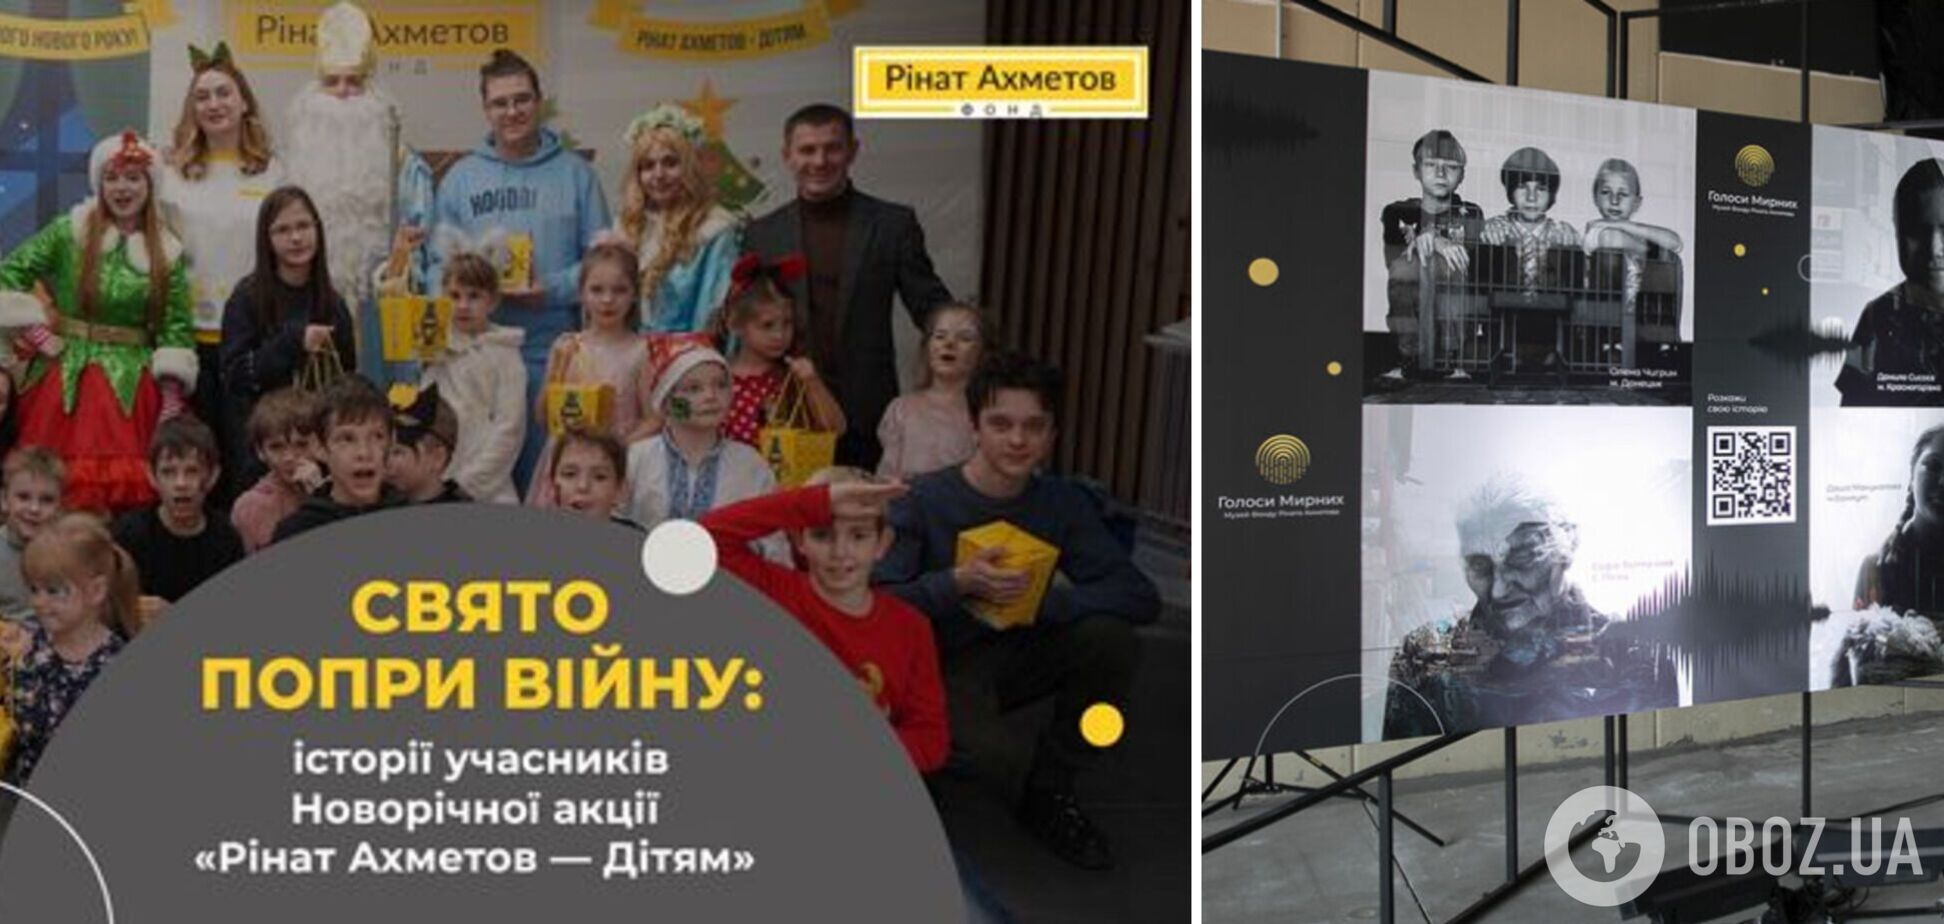 Музей 'Голоси Мирних' Фонду Ріната Ахметова зібрав історії учасників Новорічної акції про пережите під час війни